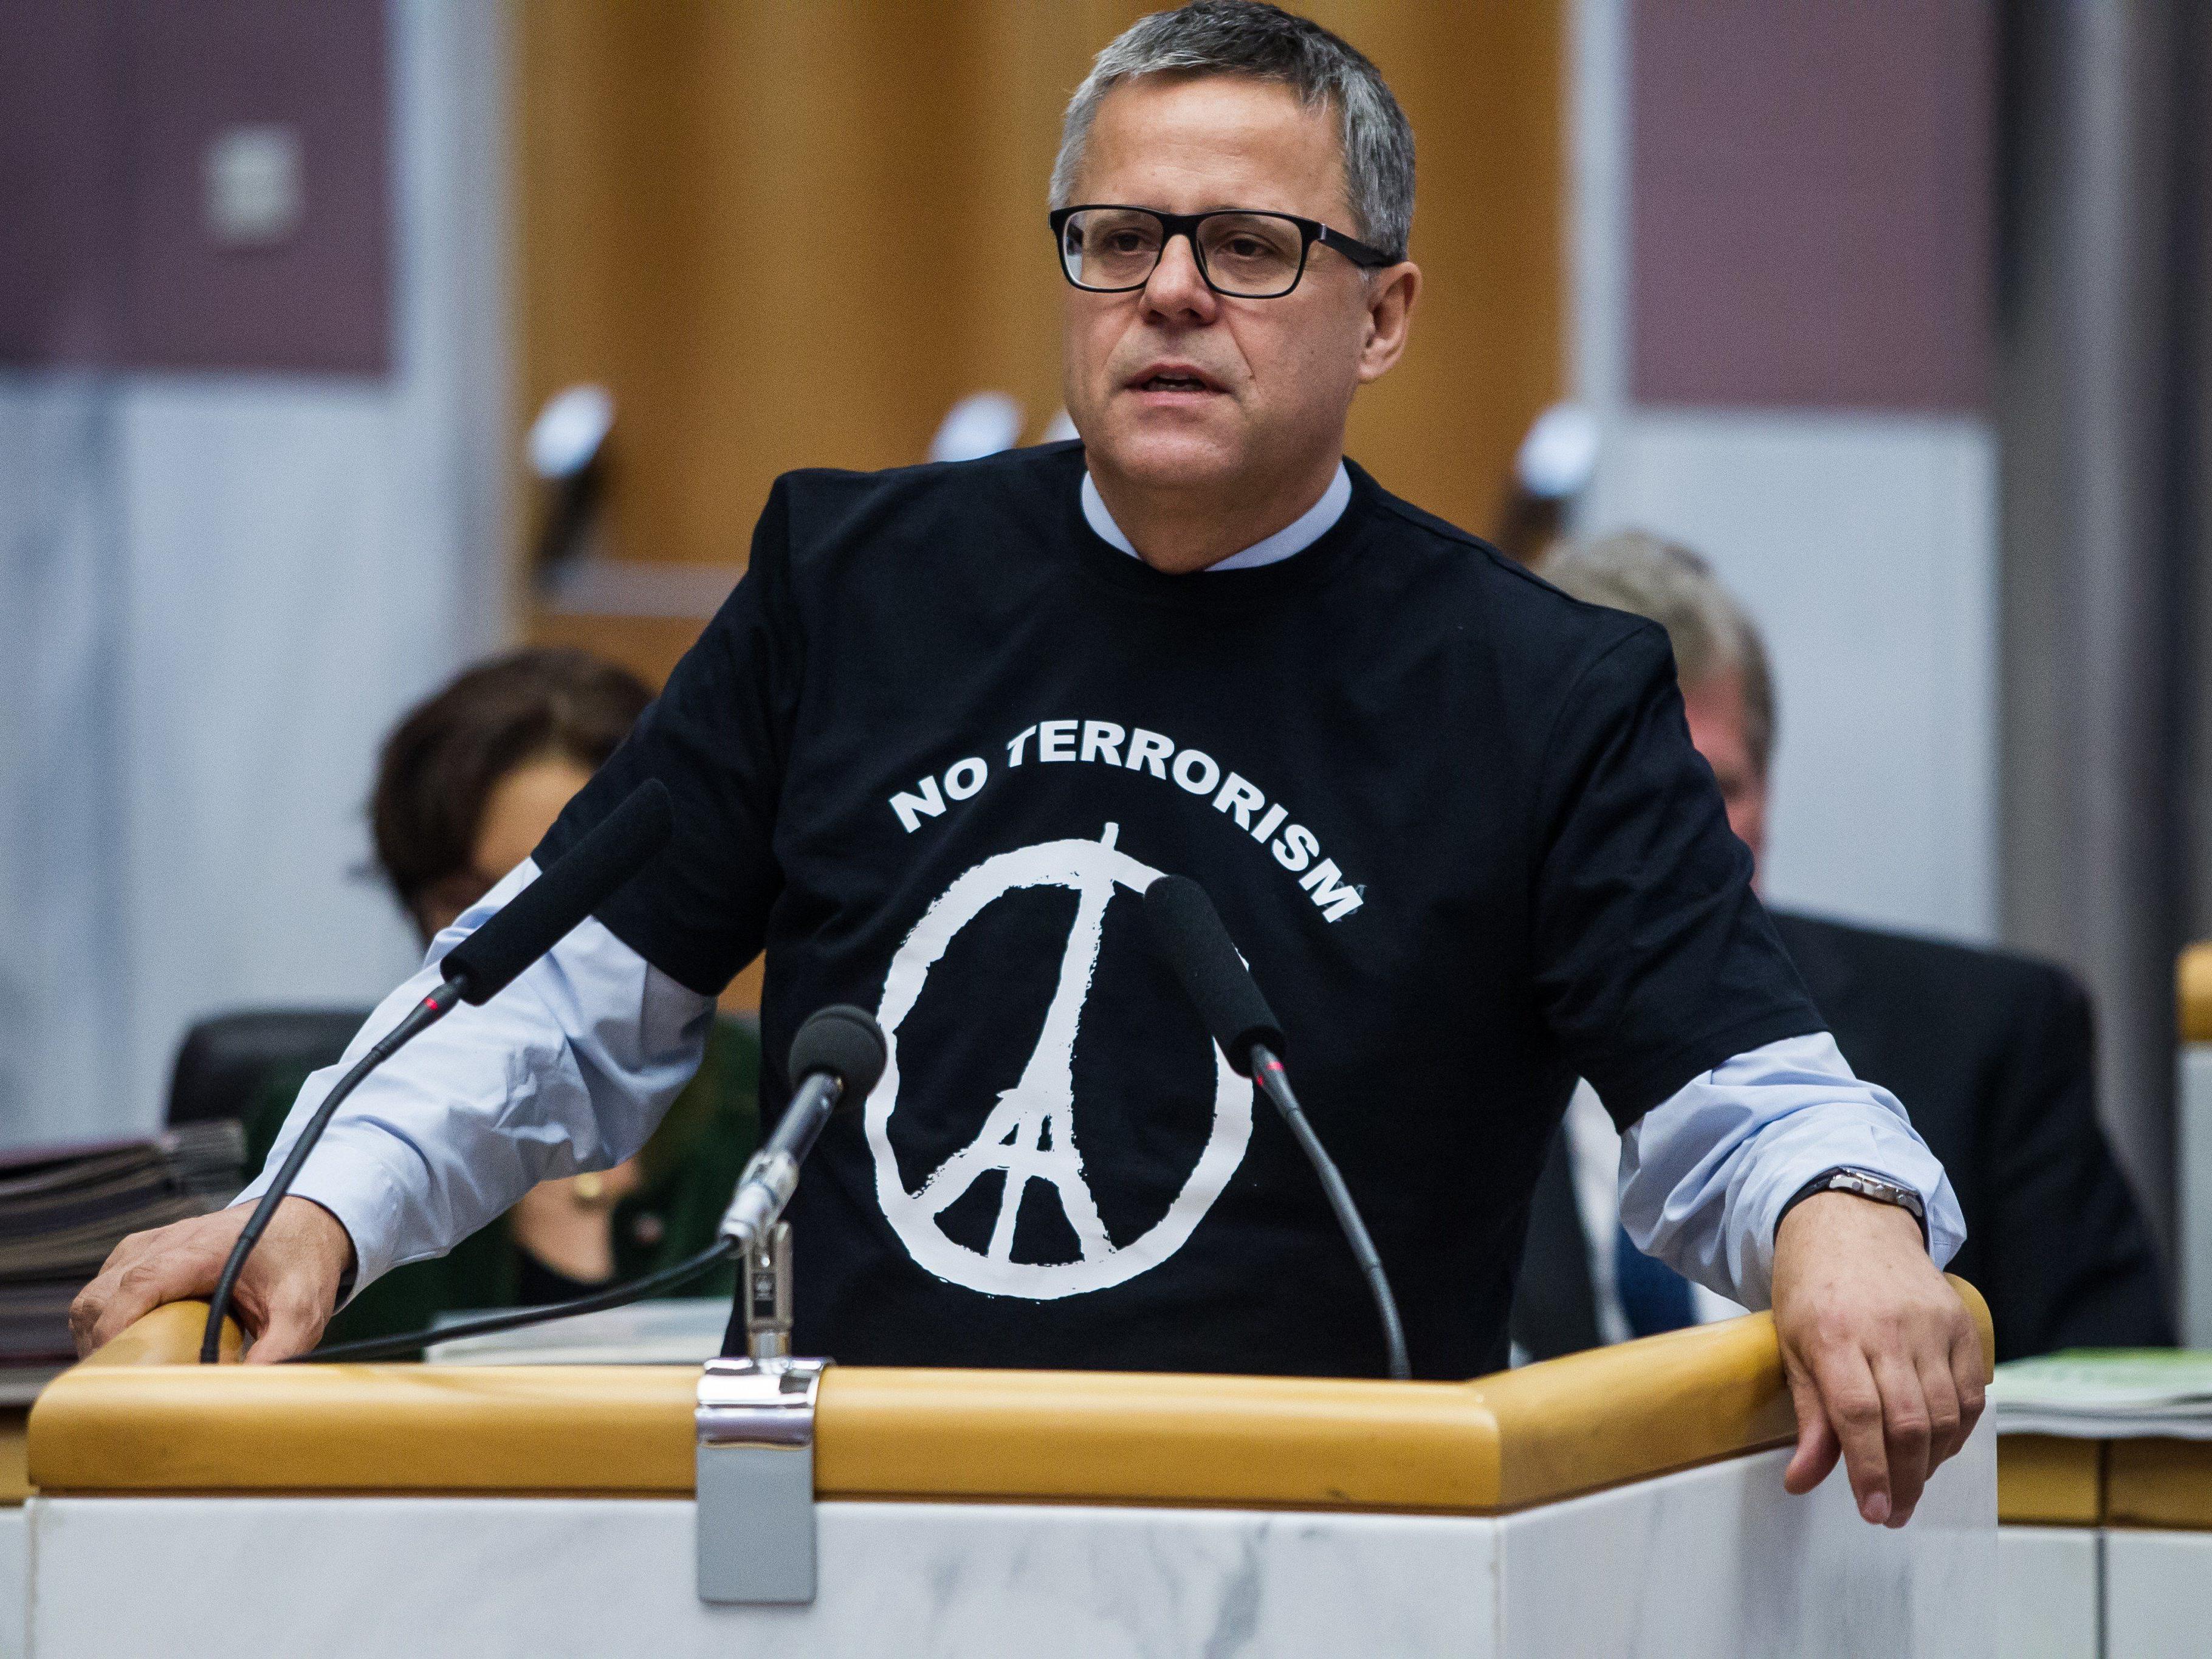 ÖVP-Klubobmann Roland Frühstück mit "No Terrorism"-T-Shirt.